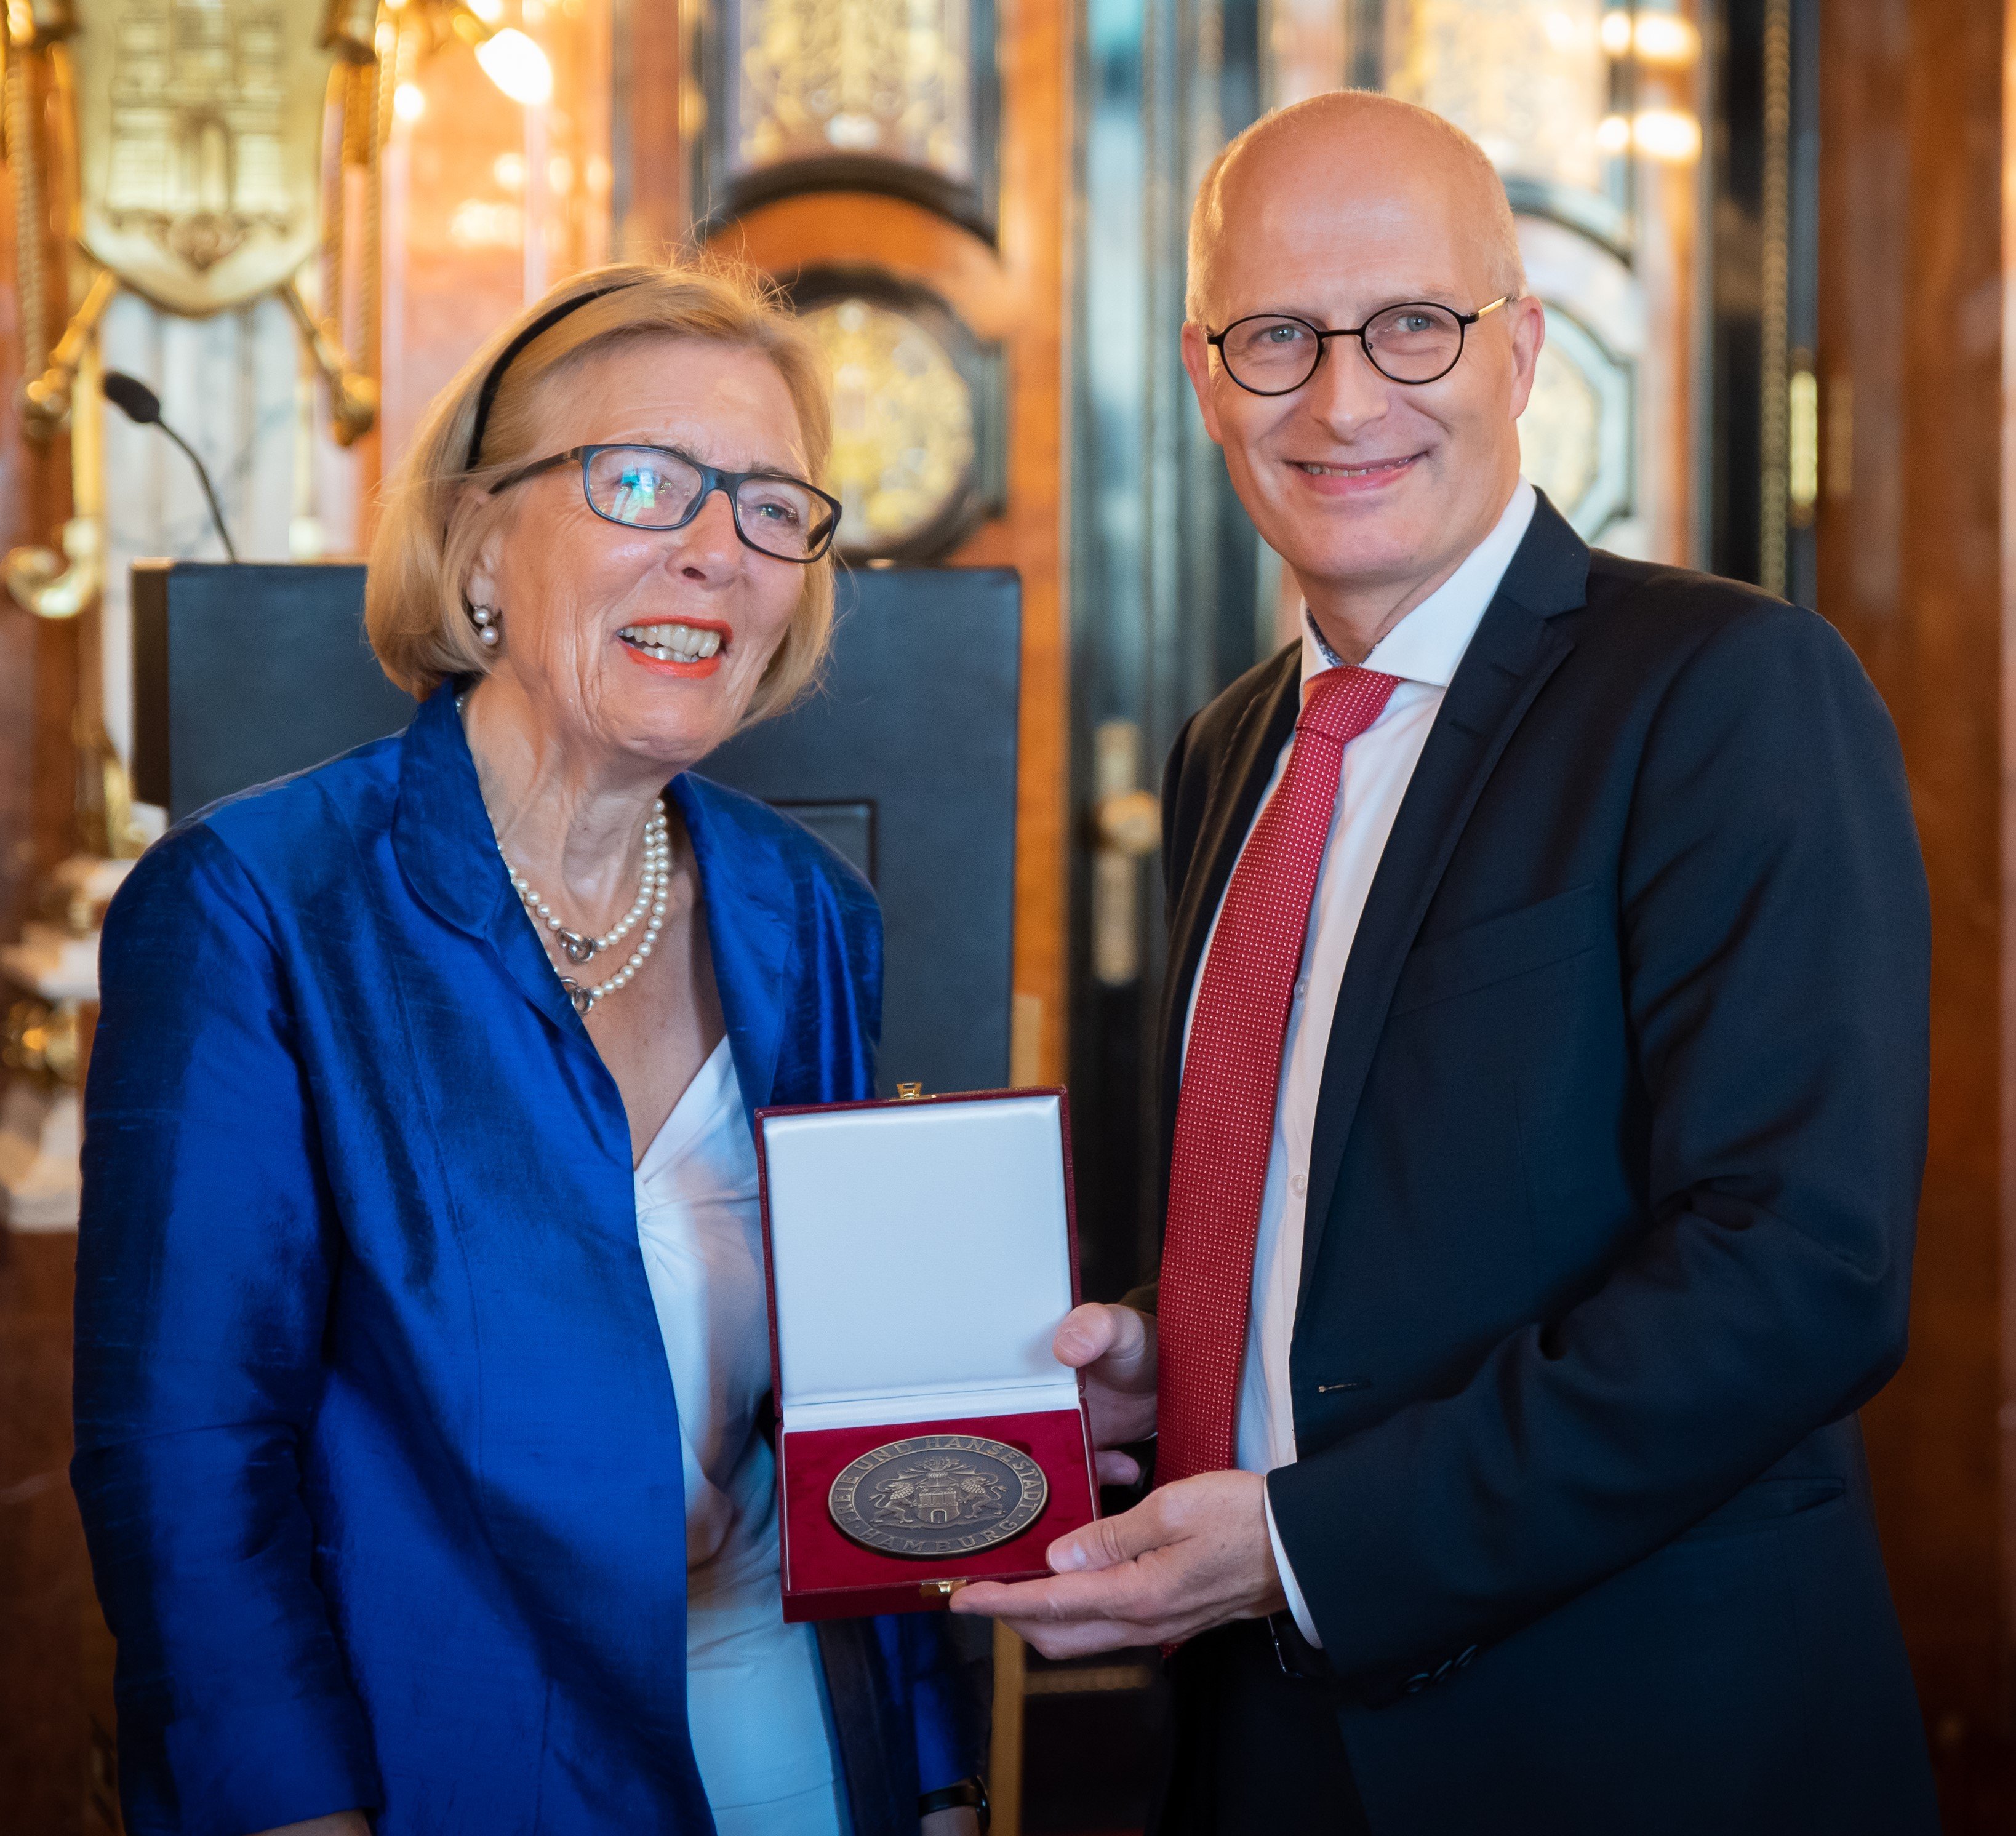 Birgit Zeidler und Bürgermeister Peter Tschentscher bei der Verleihung einer Medaille